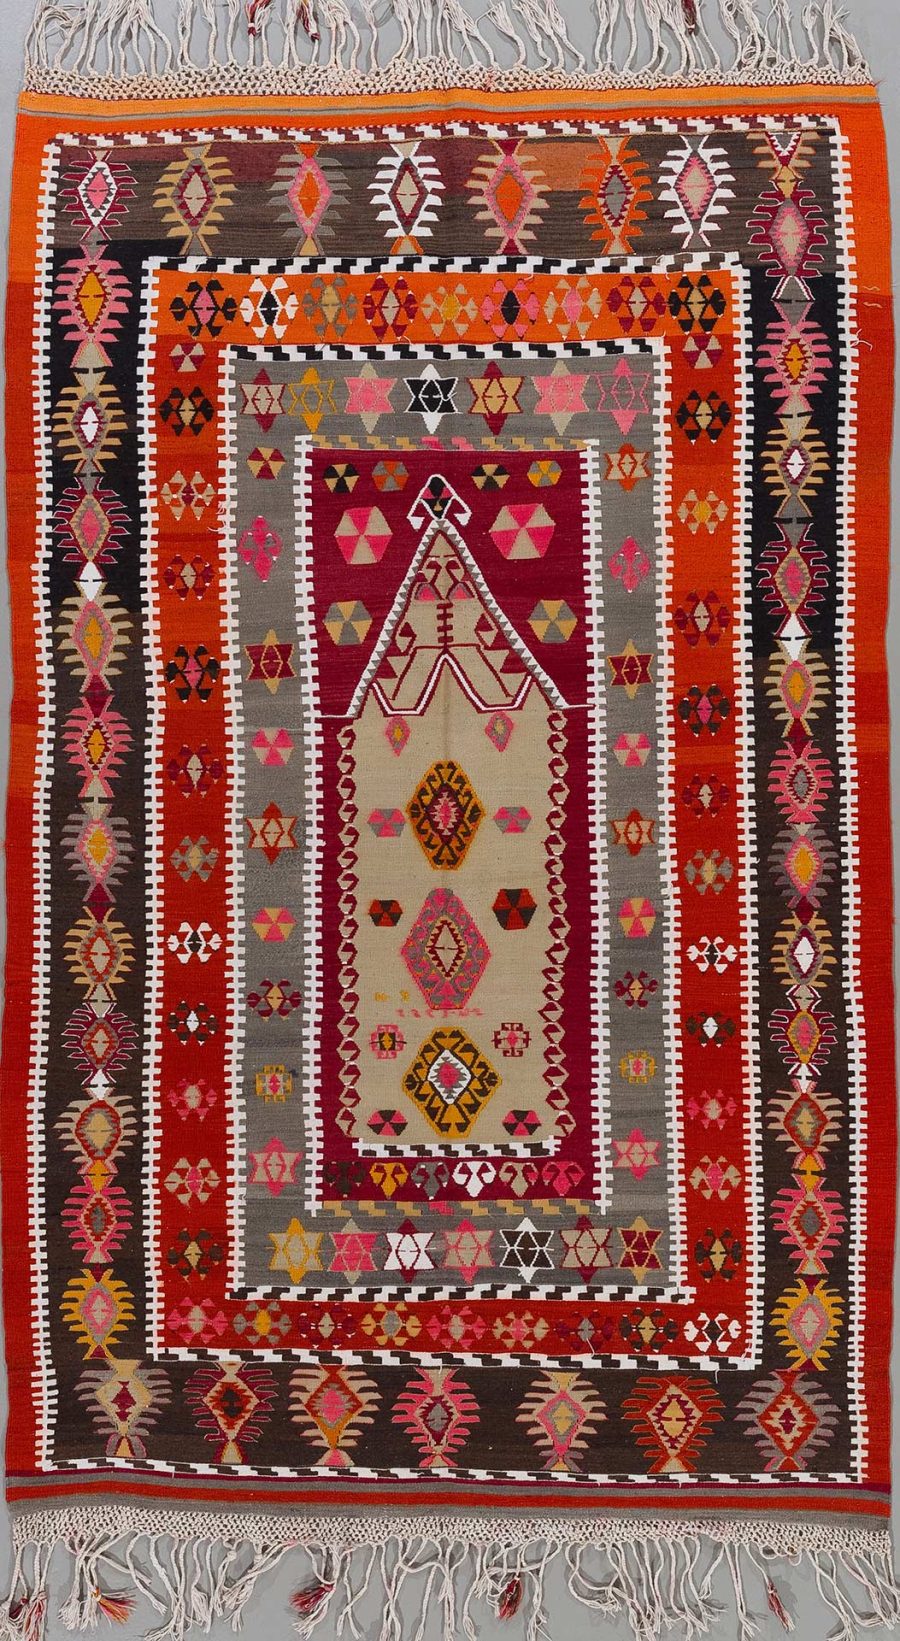 Handgewebter Teppich mit komplexem Muster in rot, braun, beige, schwarz und orange, mit zentralem Diamantmotiv und mehreren Bordüren in geometrischen Formen, abgeschlossen durch weiße Fransen an den Enden.